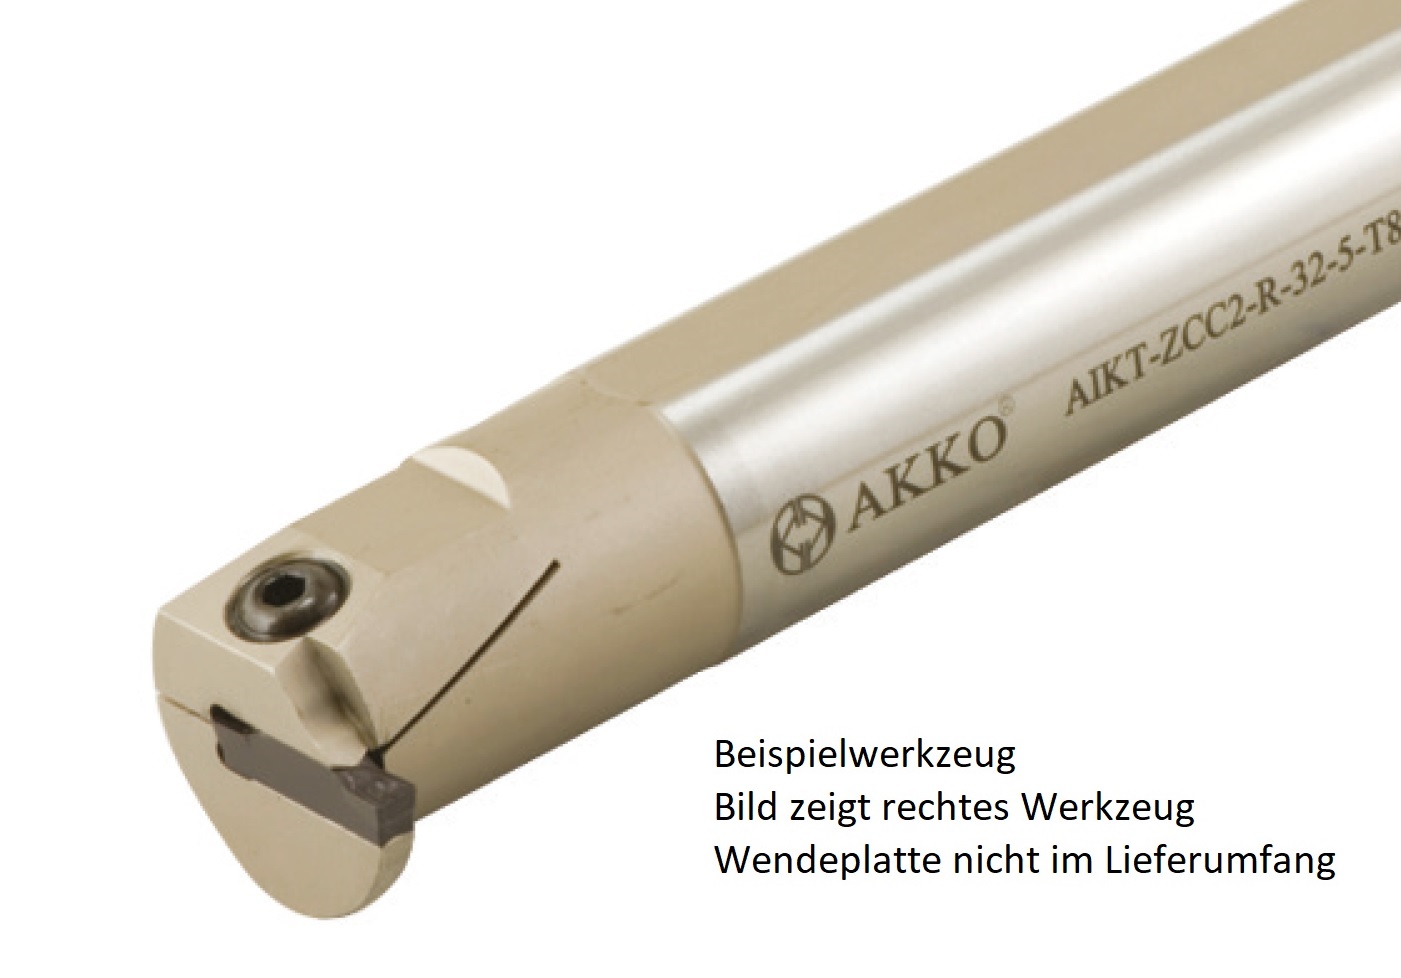 AKKO-Innen-Stechhalter, kompatibel mit ZCC-Stechplatte Z.HD-5
Schaft-ø 32, ohne Innenkühlung, links